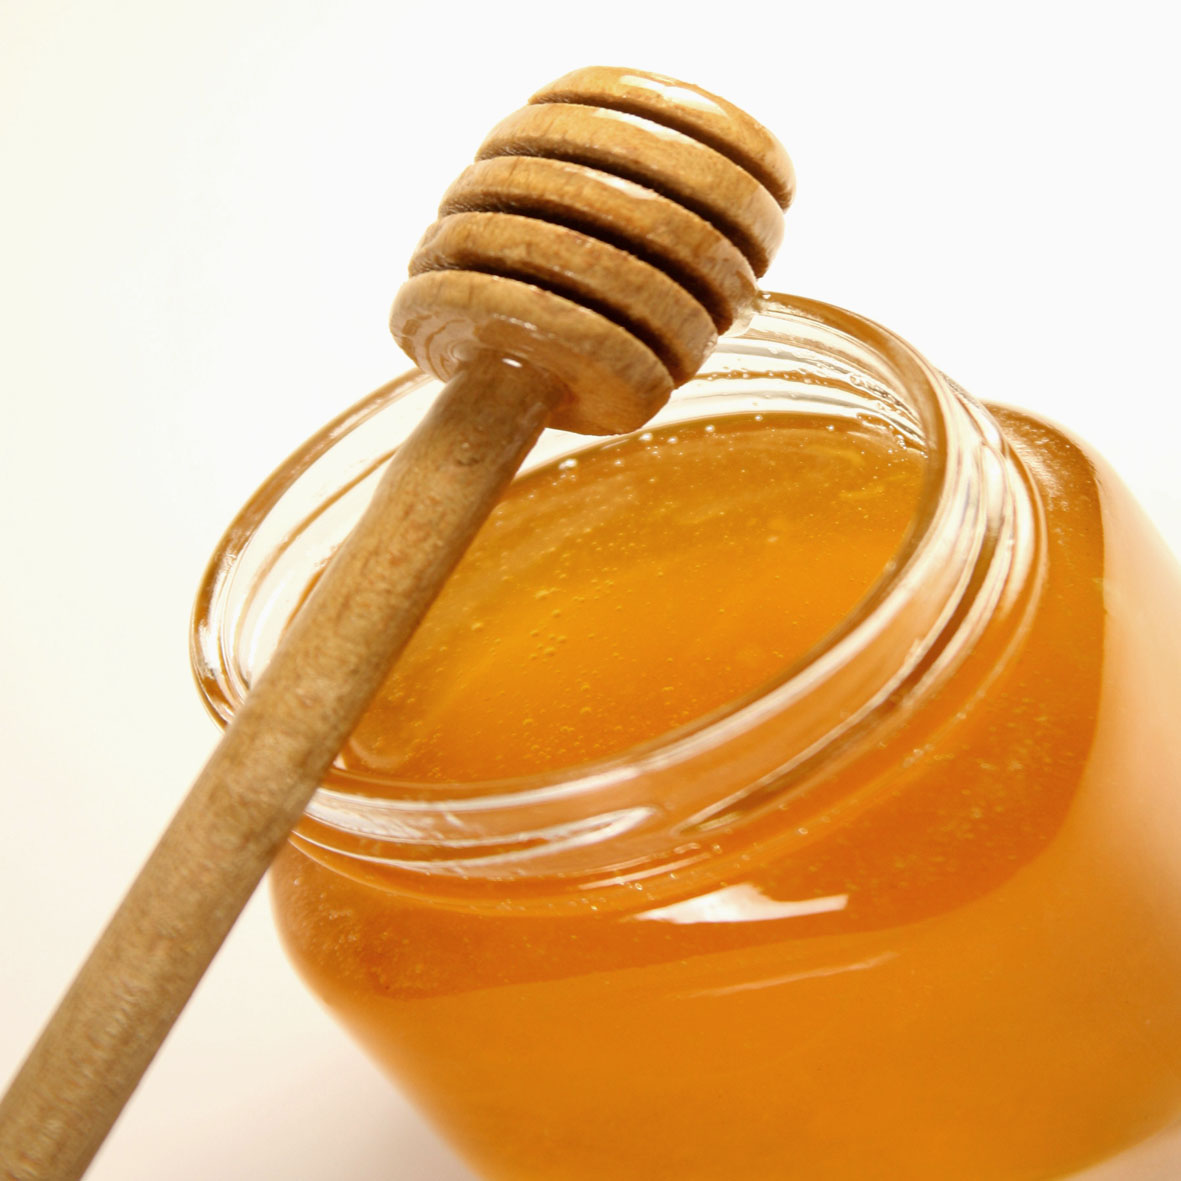 Honig aus Ibiza - Balearen - Agrarnahrungsmittel, Ursprungsbezeichnungen und balearische Gastronomie